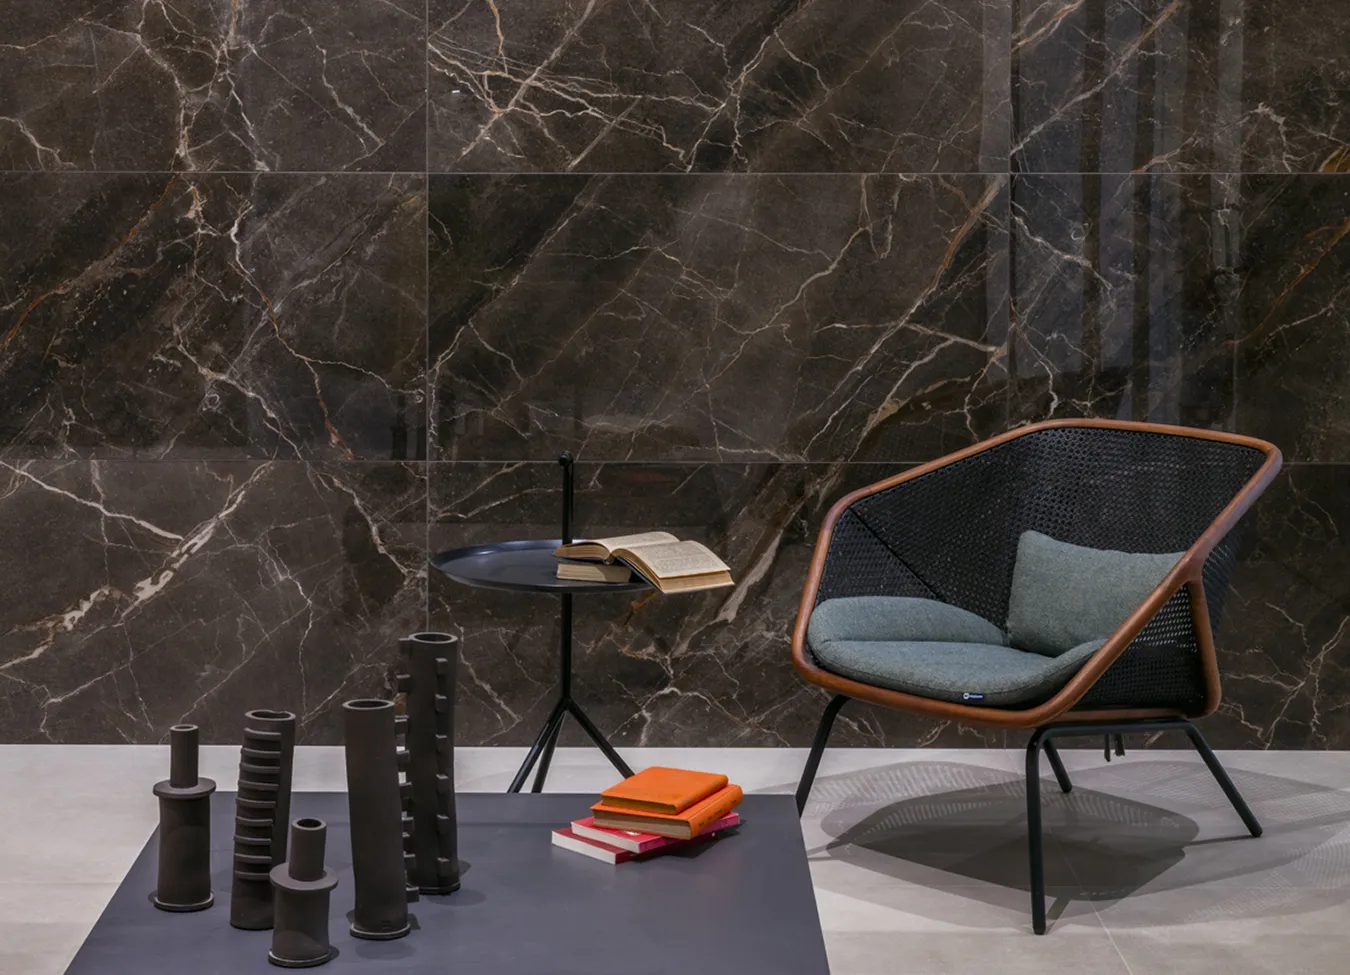 Элегантная стена из керамогранита под мрамор Ombra Moca коллекции 9cento, с дизайнерским креслом и современными аксессуарами.